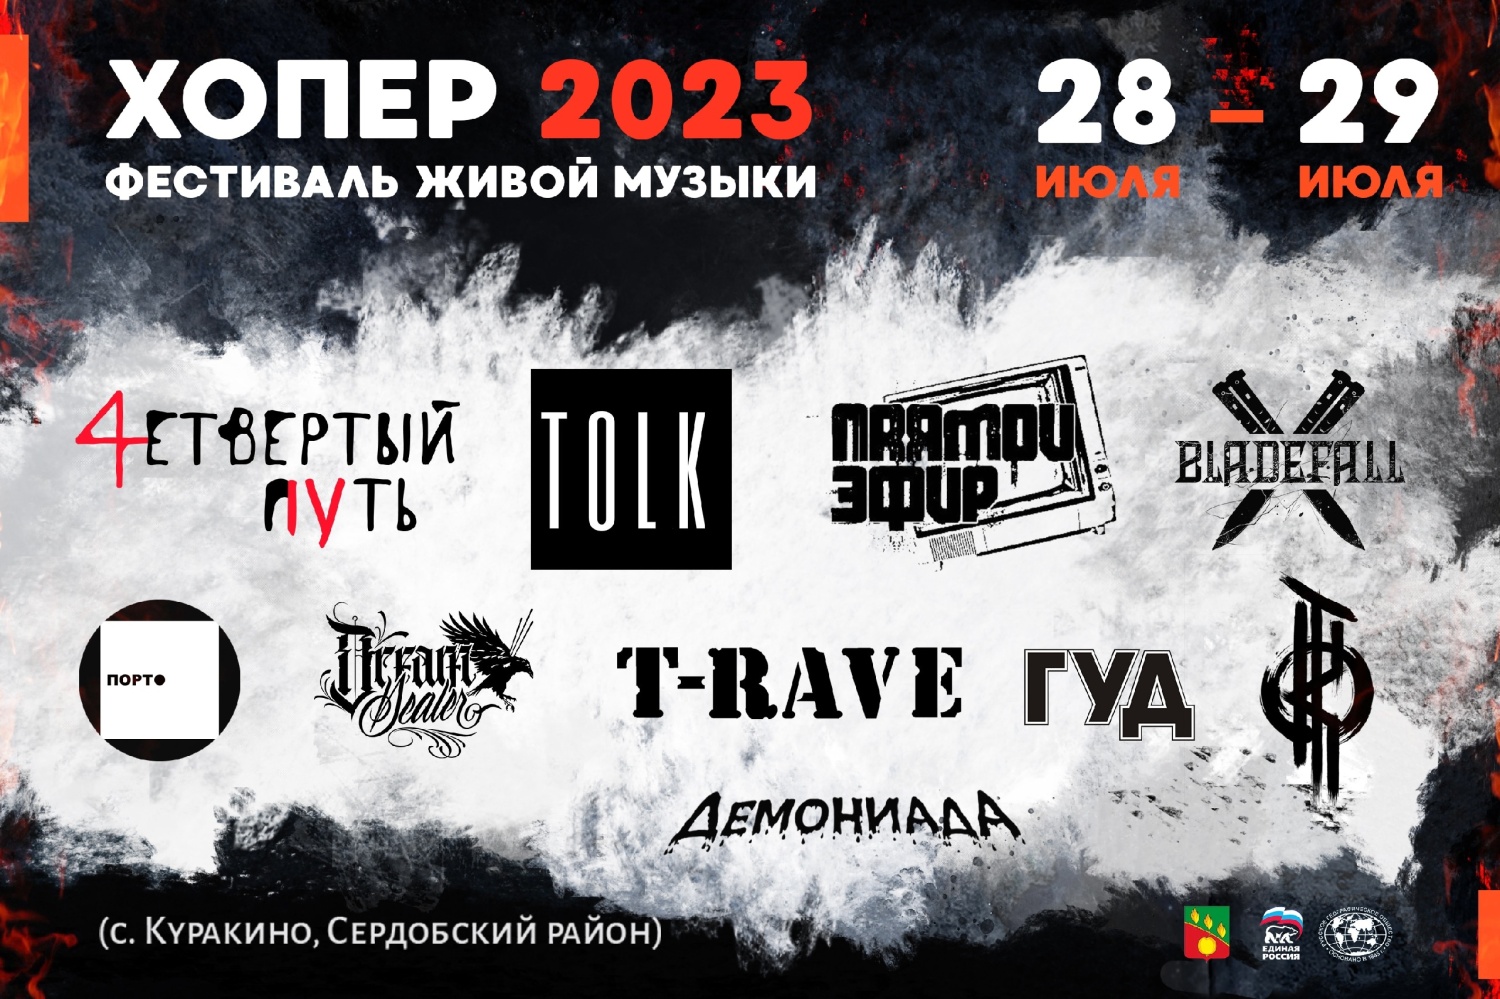 Пензенцев приглашают на фестиваль живой музыки «Хопер – 2023» в Сердобском районе